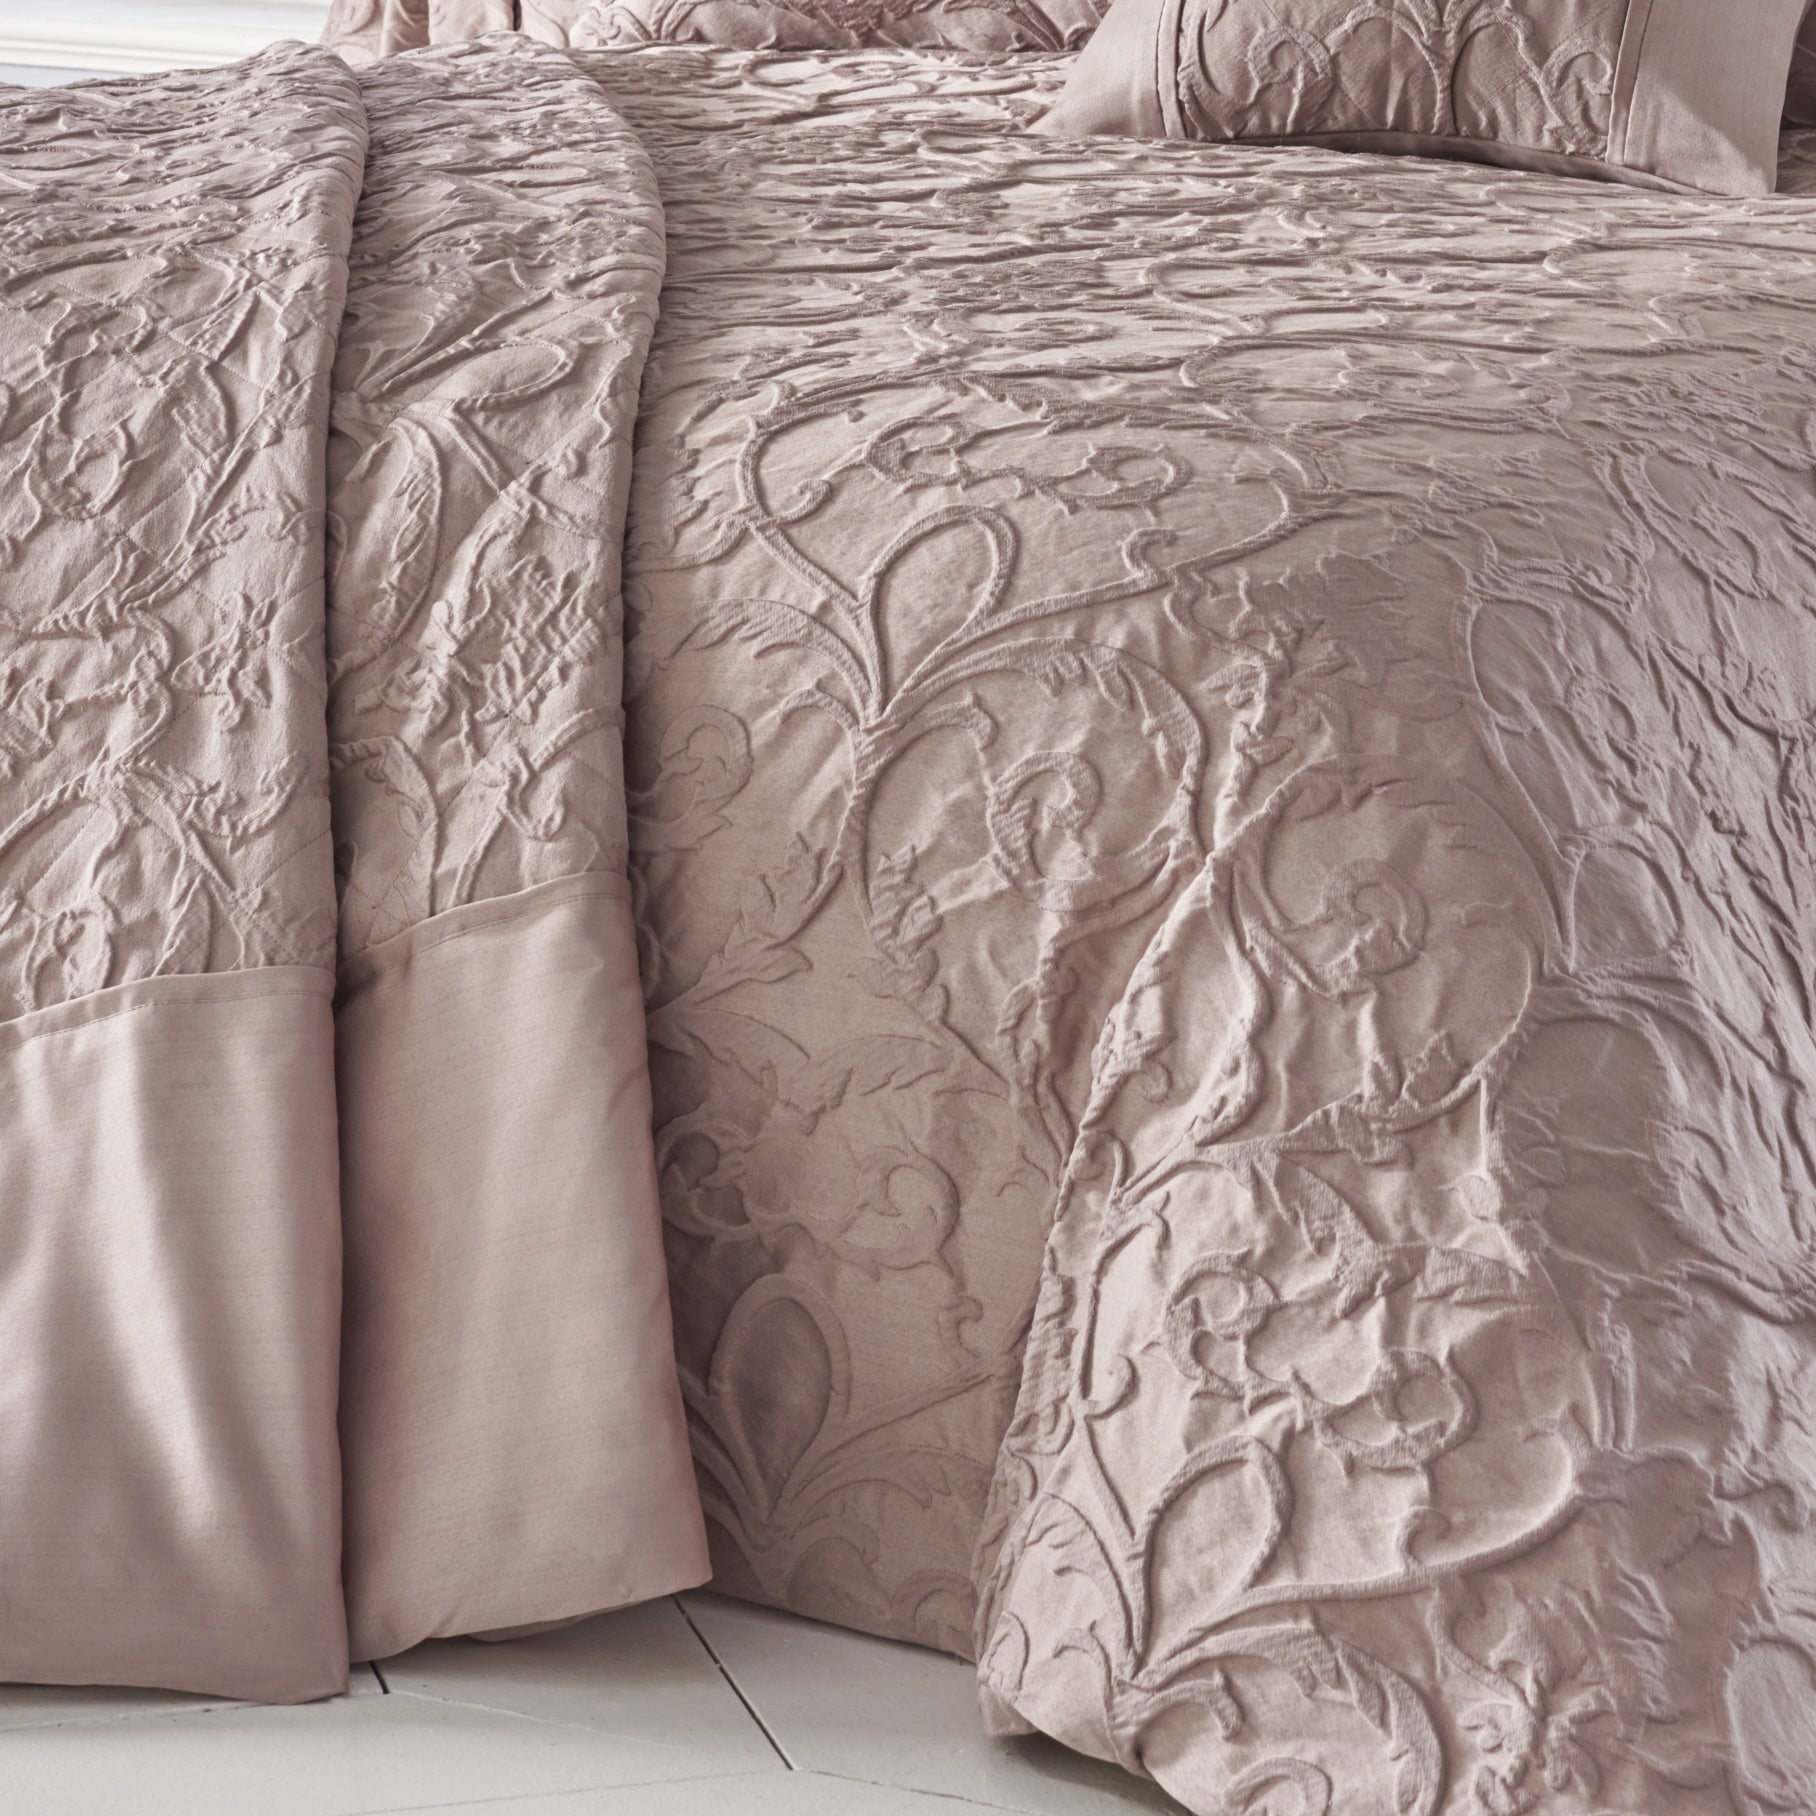 Blush Damask Jacquard Bedspread Throw Pillowshams Set Pink